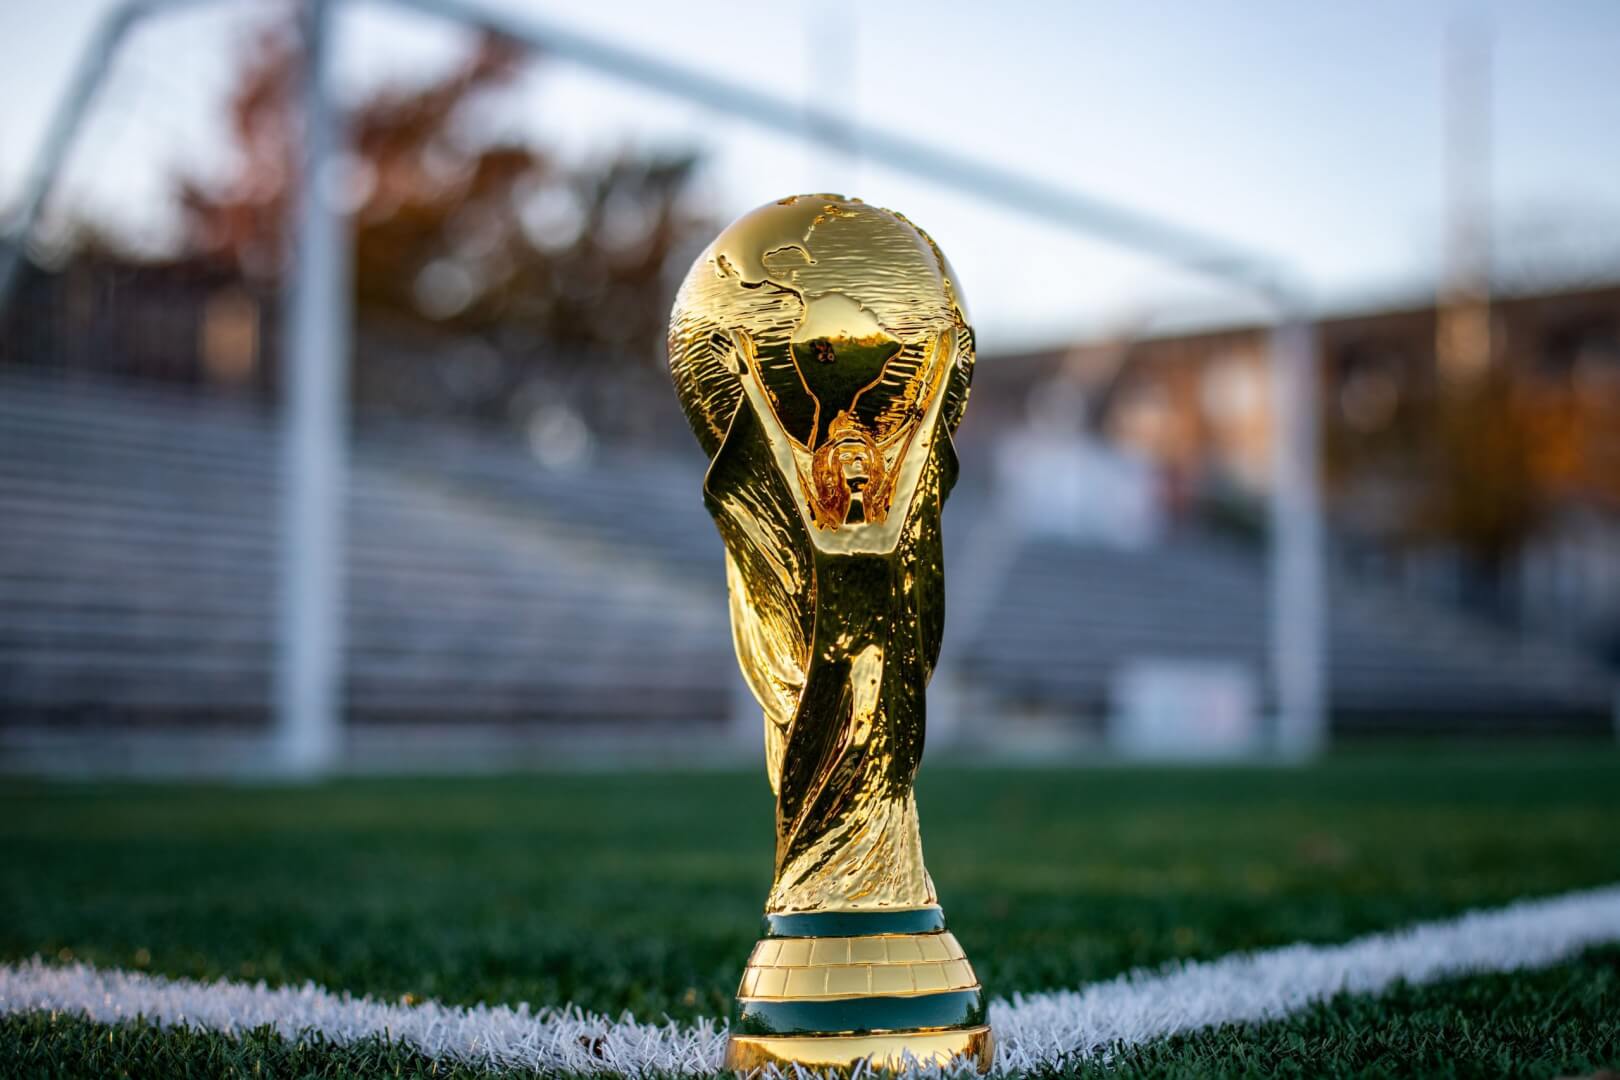 Taça da competição mundial de futebol. Imagem disponível em Unsplash.